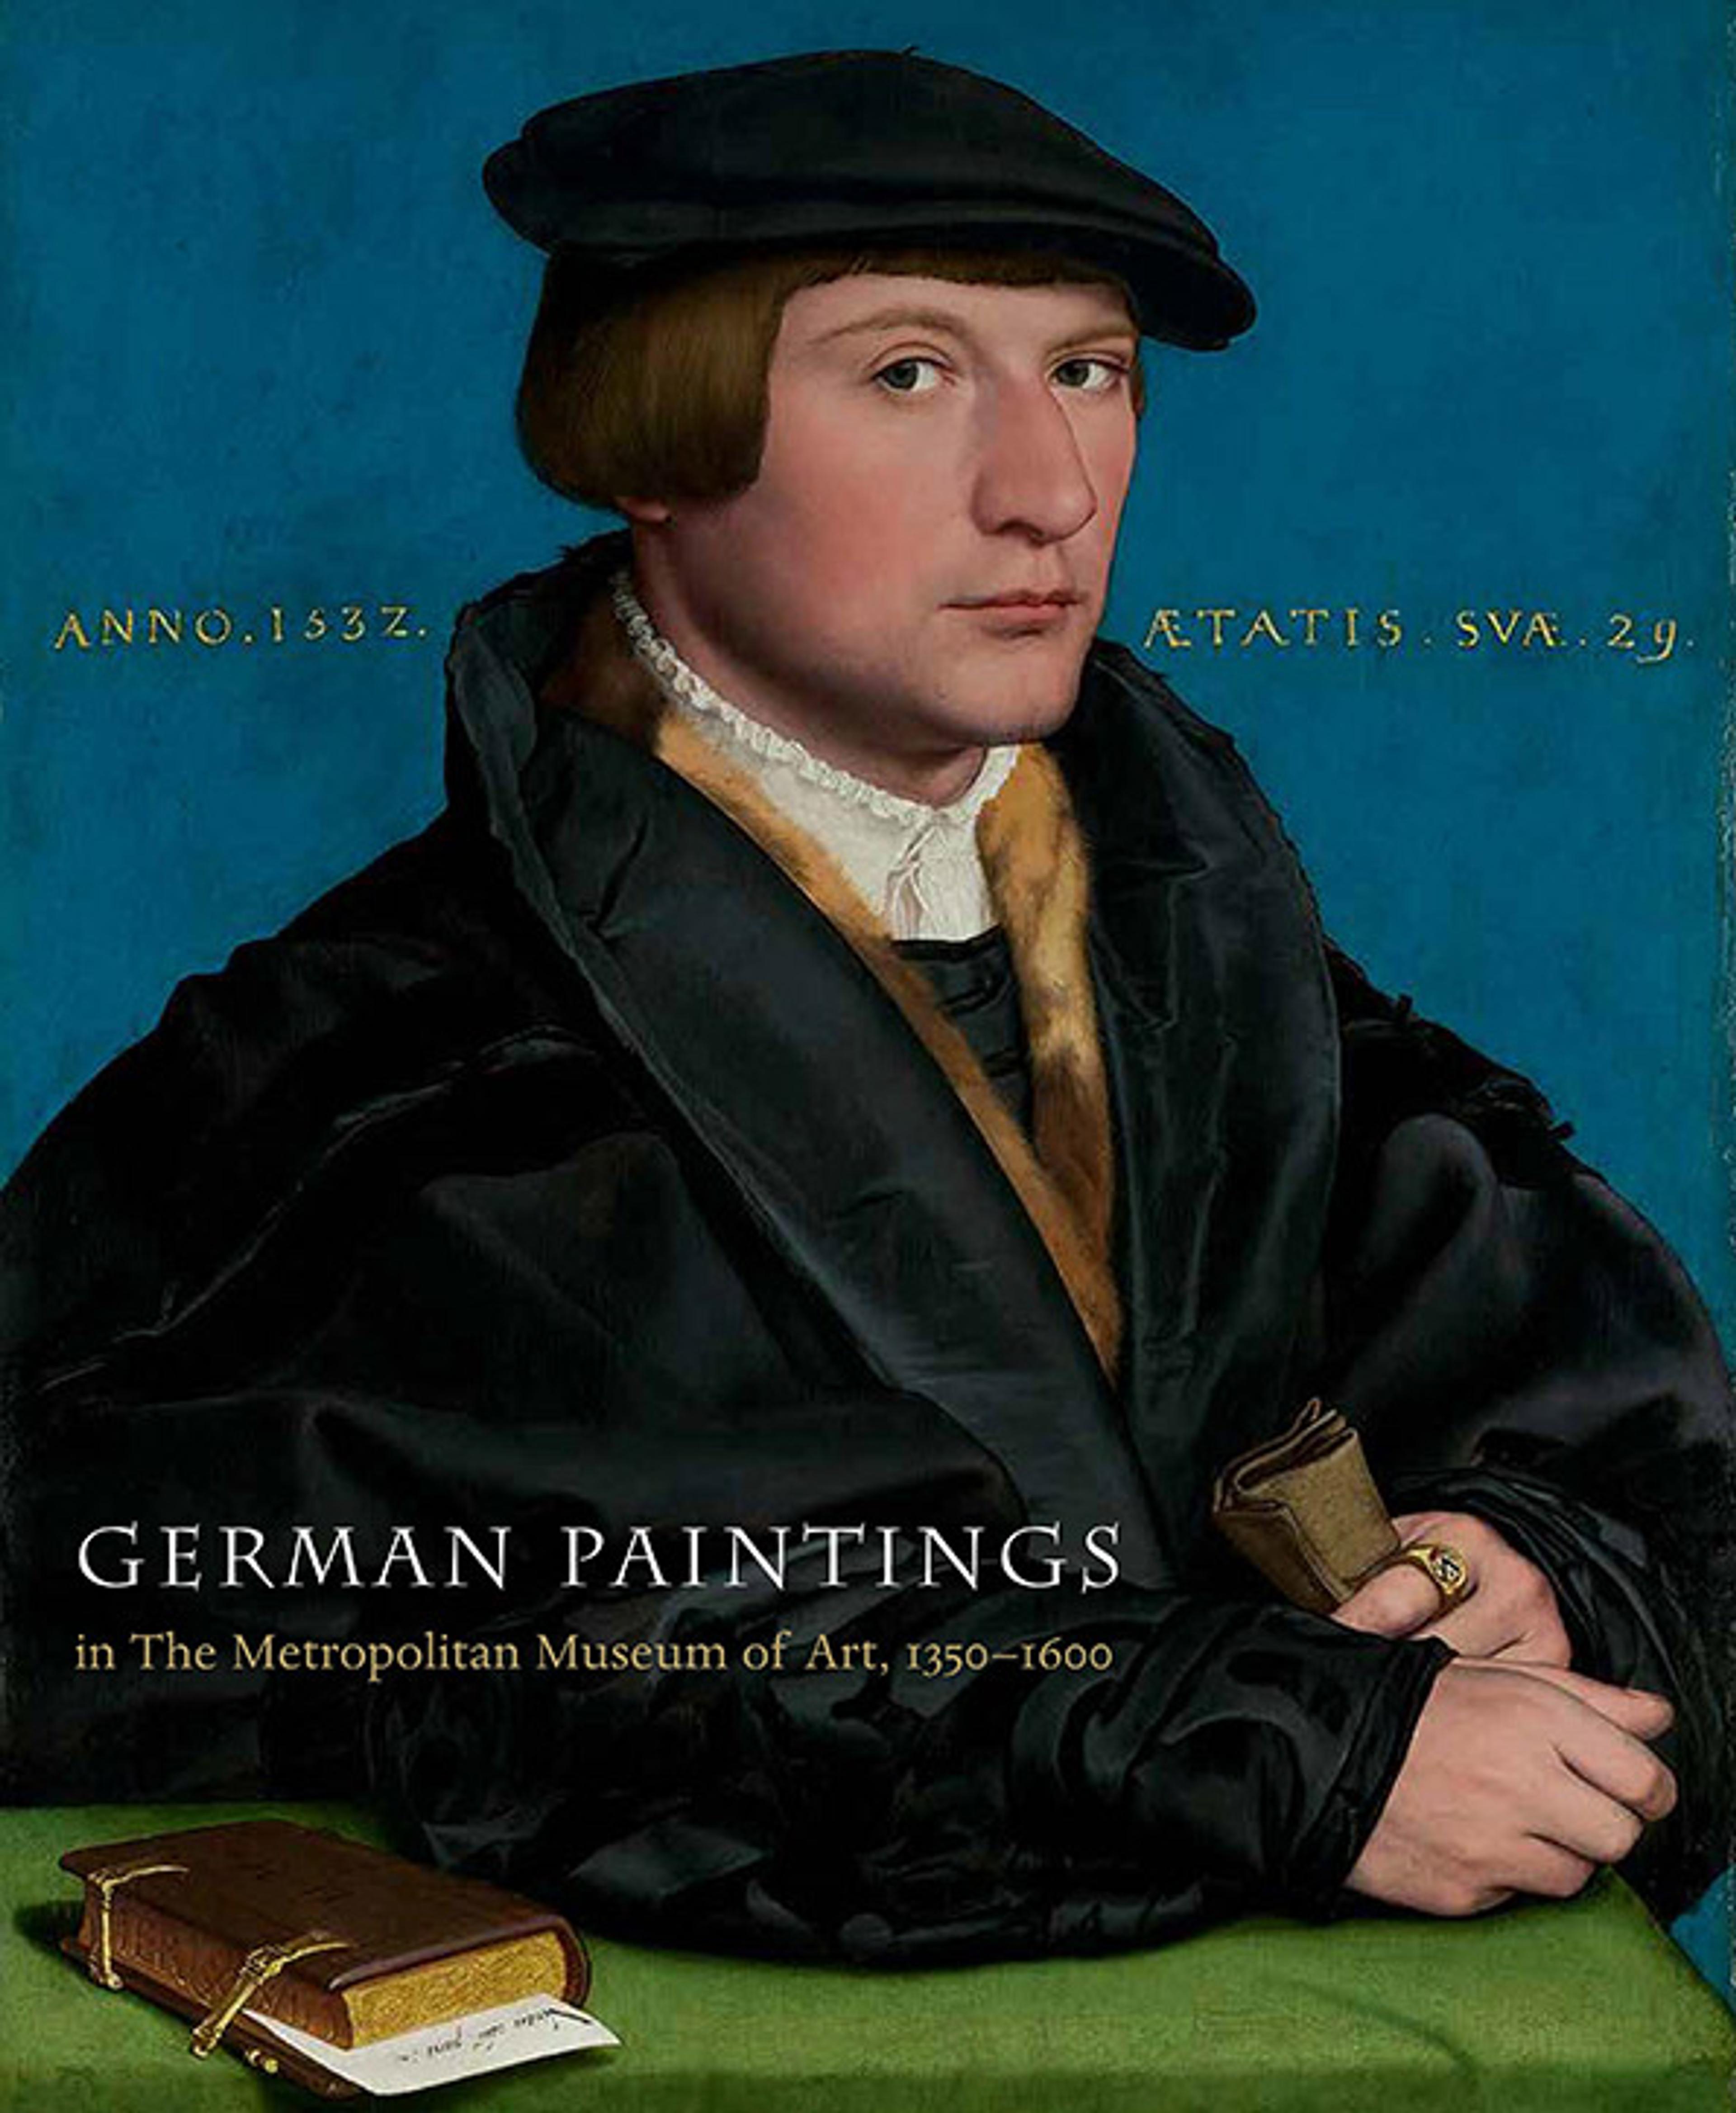 Book cover for "German Paintings in The Metropolitan Museum of Art, 1350–1600"